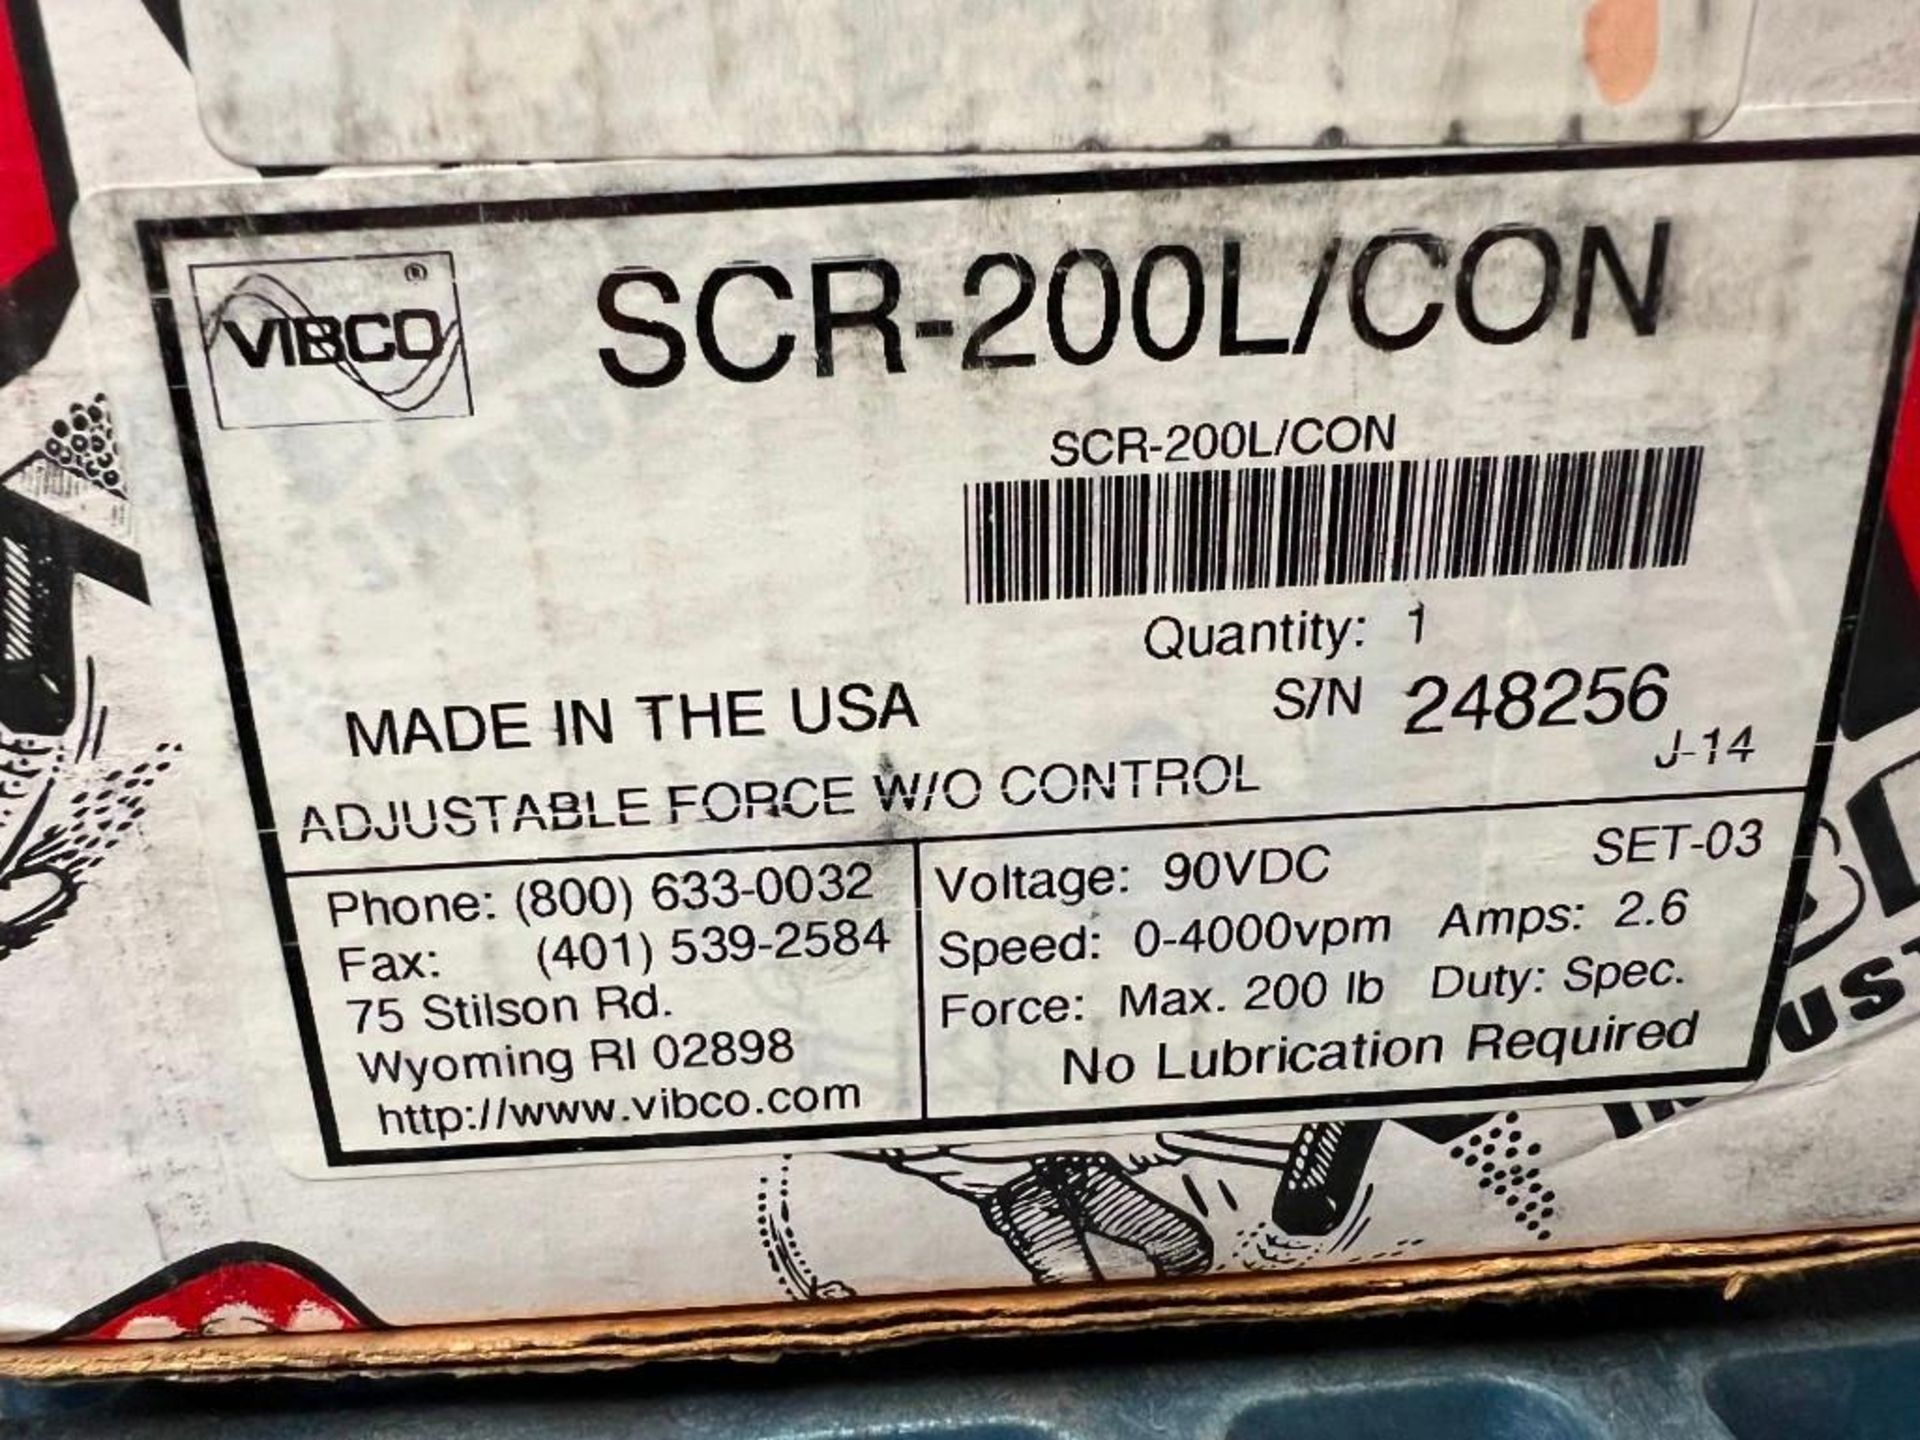 VIBCO SCR-200L/CON - Image 3 of 3